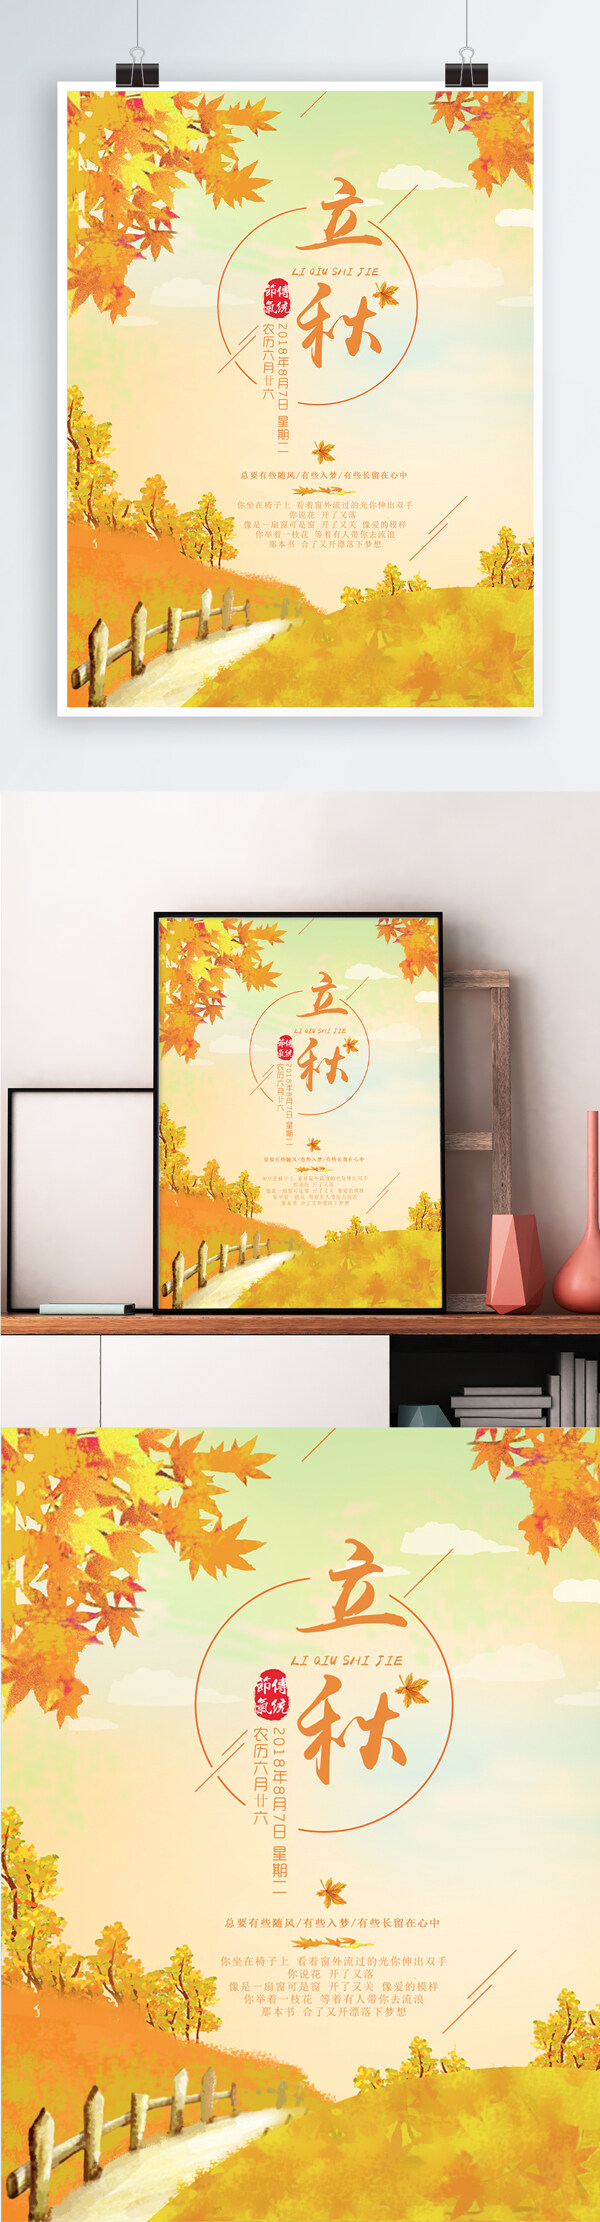 落叶缤纷之立秋节气海报设计